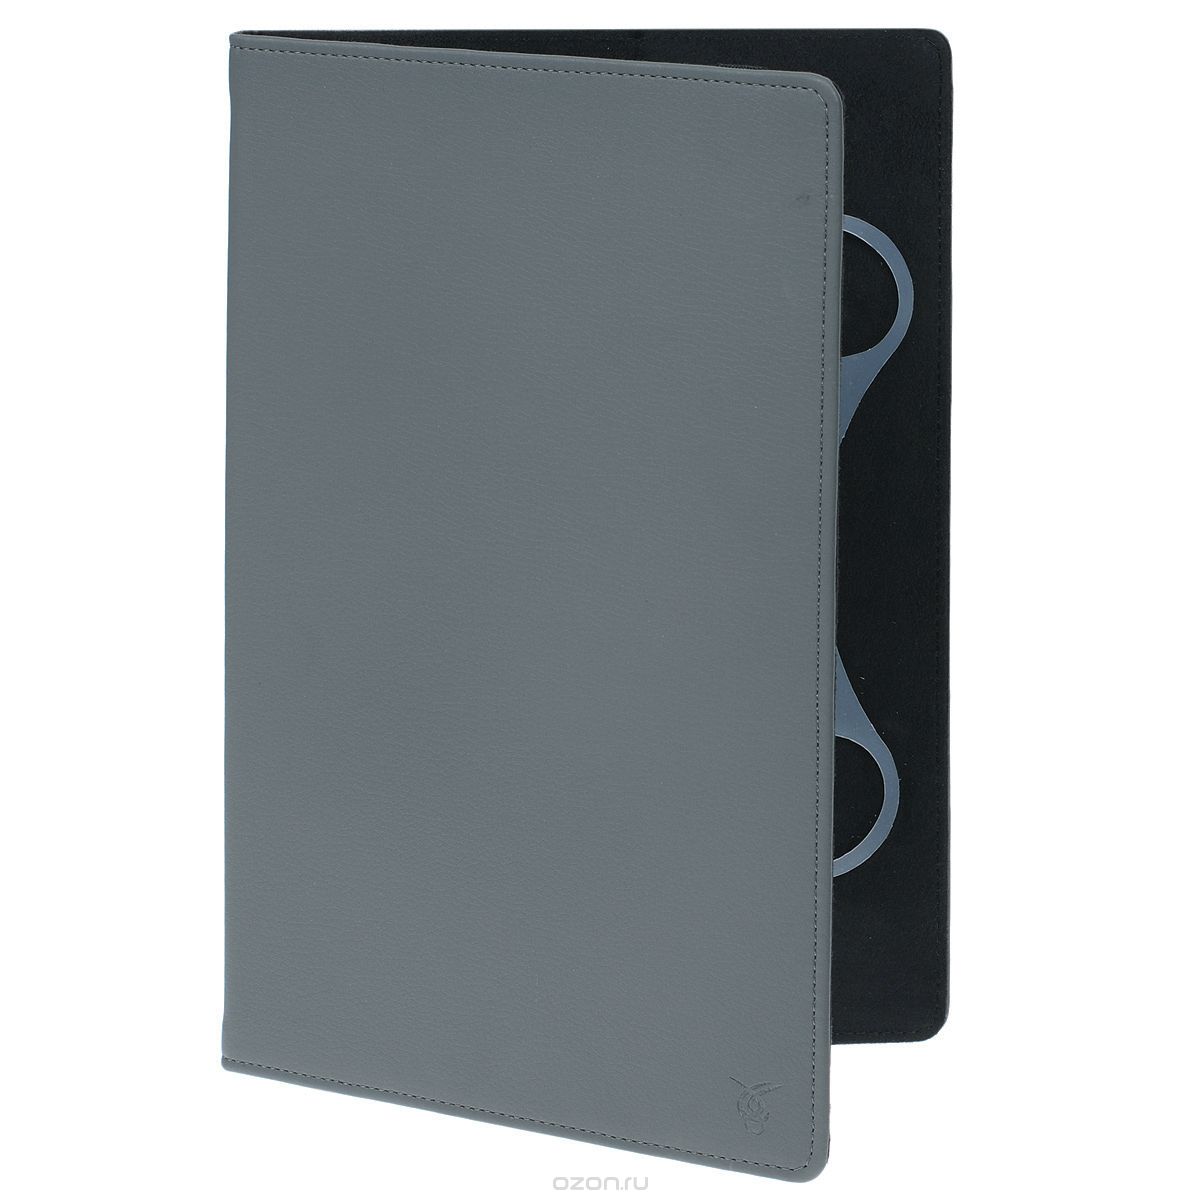 Кожаный универ. чехол-обложка Basic VIVACASE для планшетов 11", серый (VUC-CM011-gr)